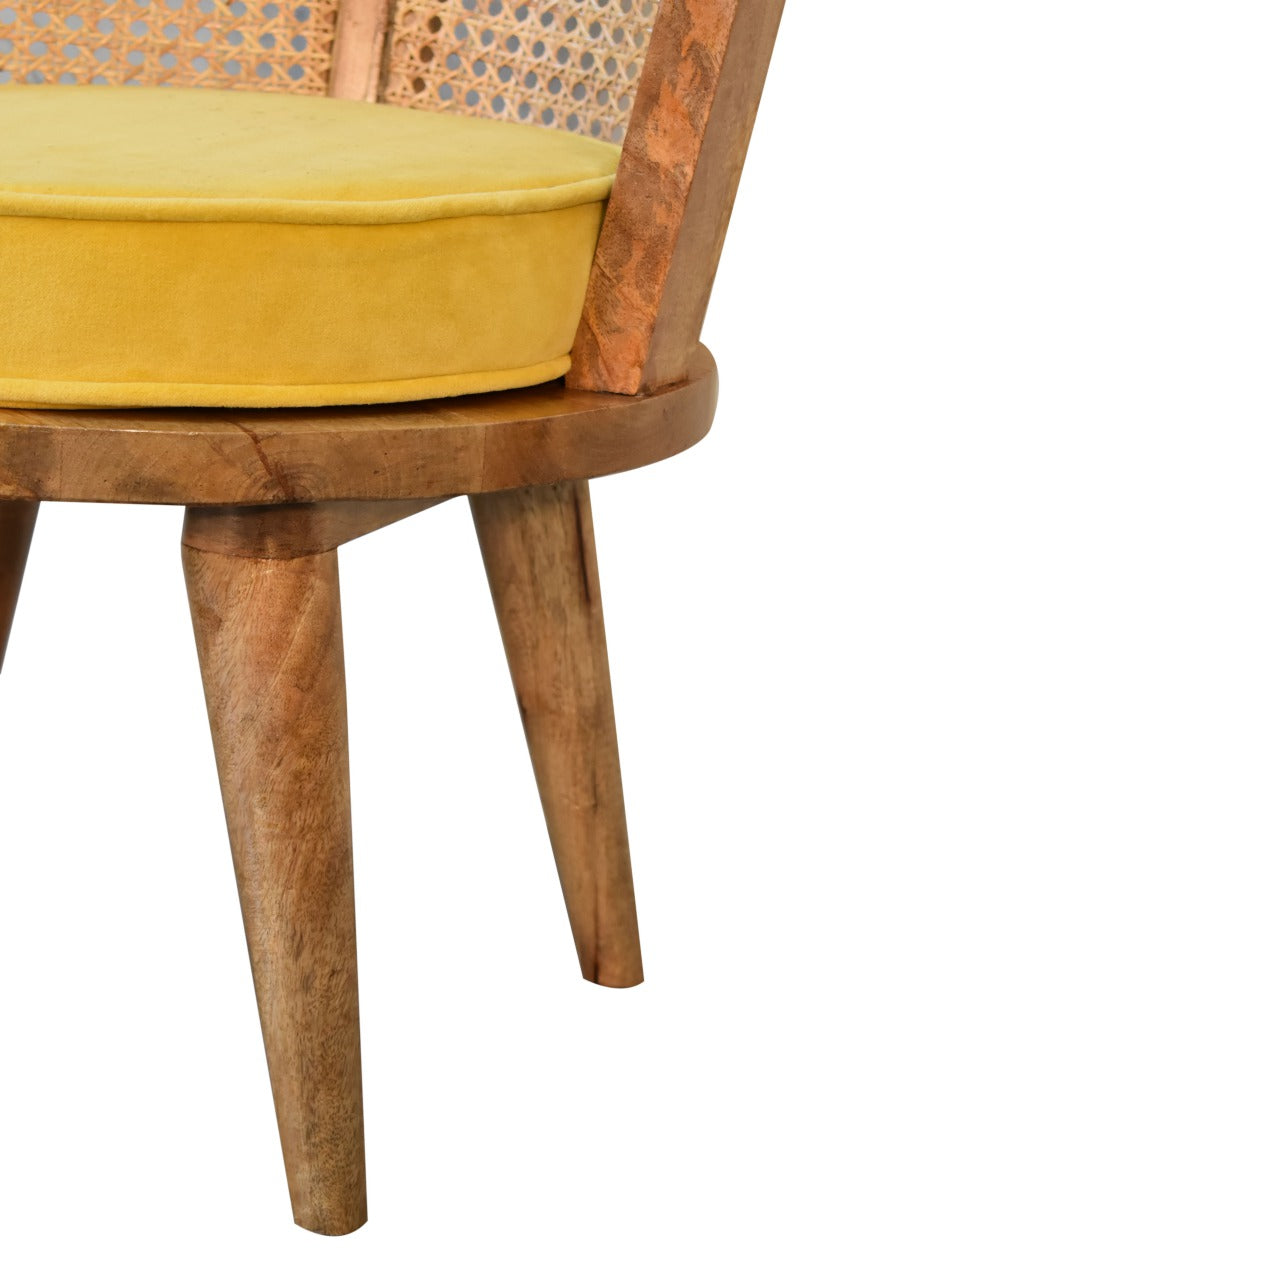 Mustard Yellow Cotton Velvet Nordic Rattan Bedroom Chair - CasaFenix